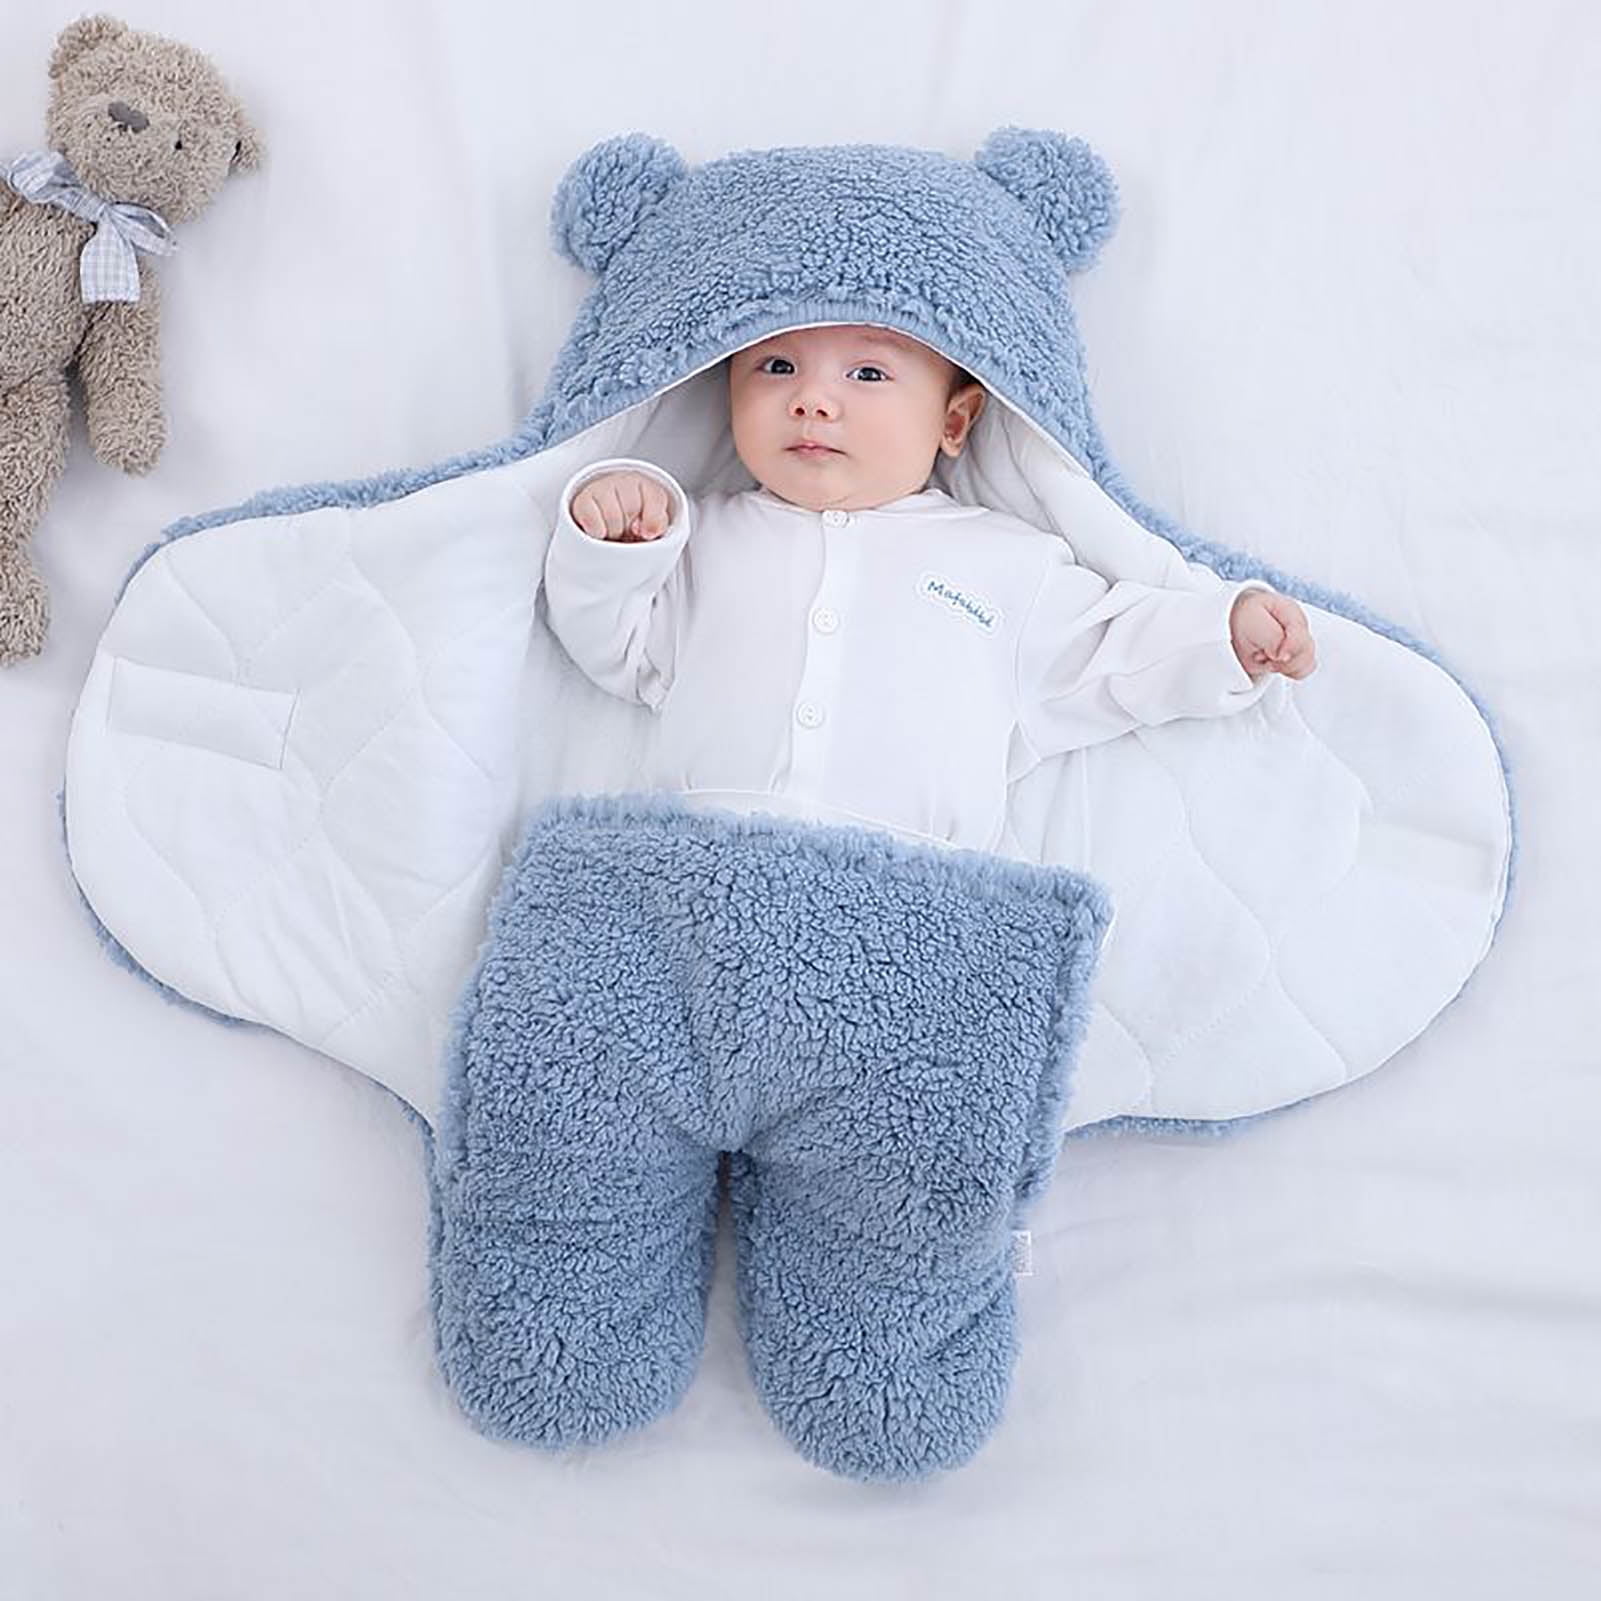 Teddy Bear Fleece Hooded Sleep Wrap Swaddling Blanket 24"x12" Gift for New Baby 